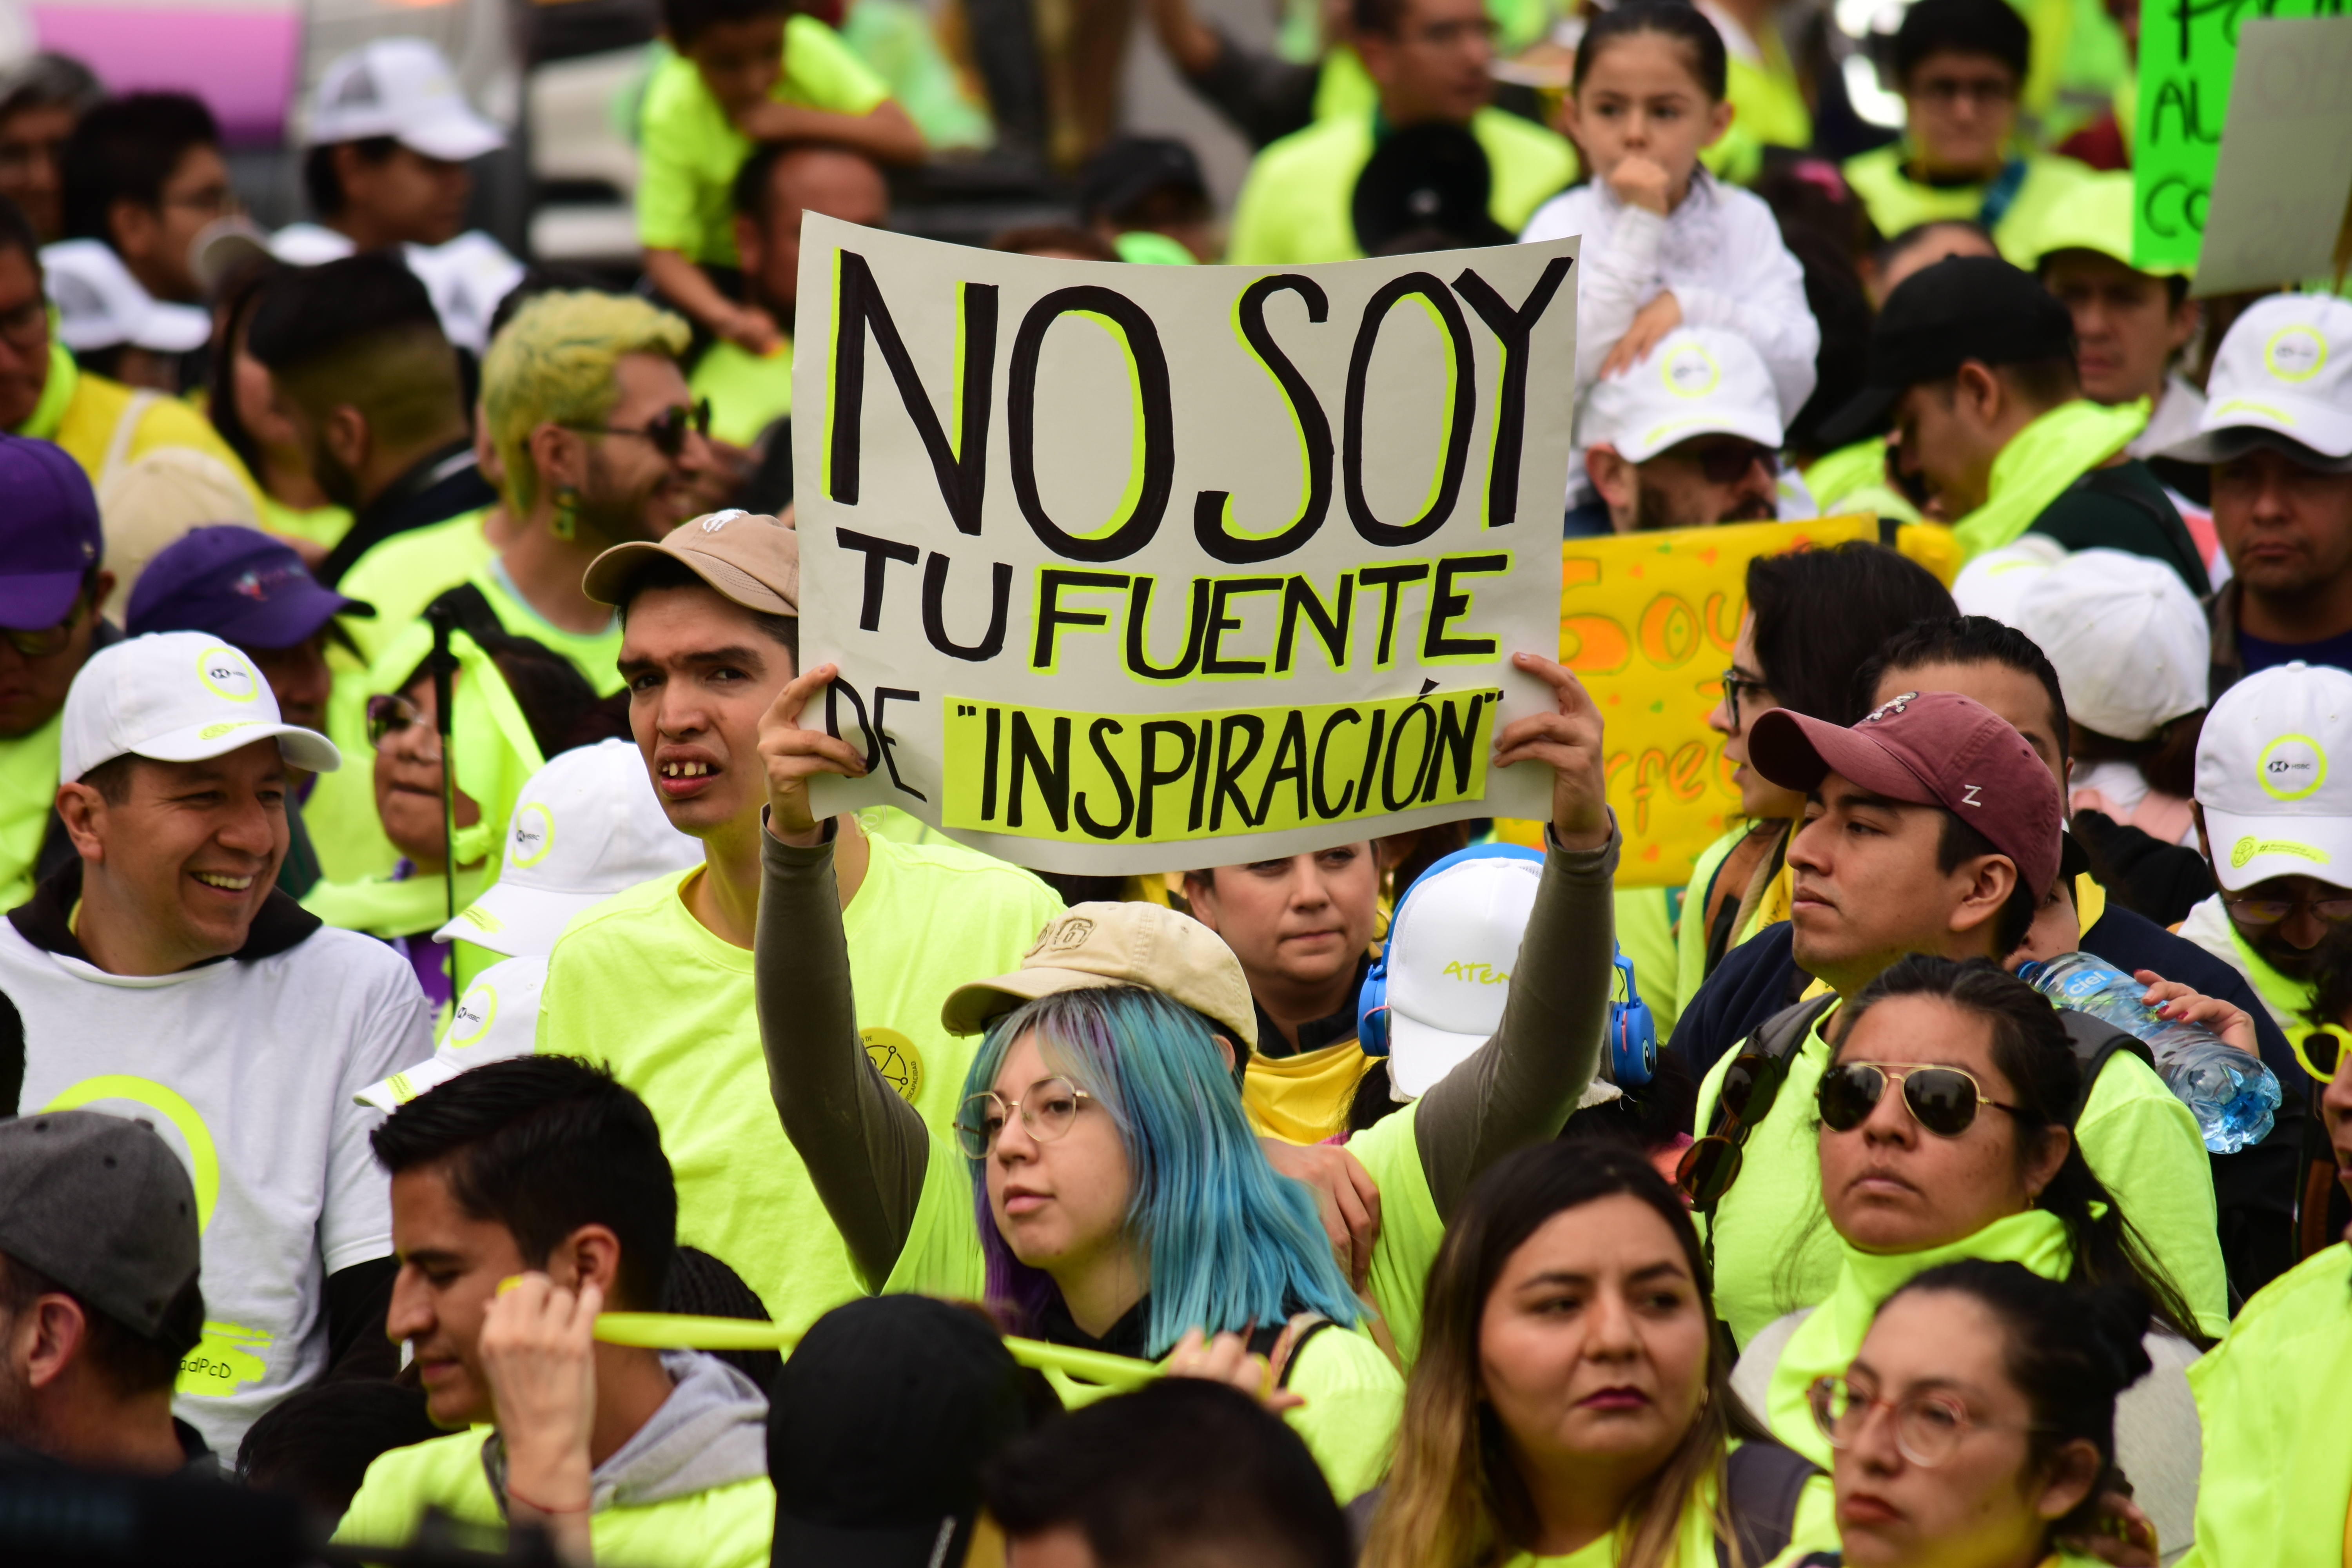 Personas vestidas de amarillo fosforescente una de ellas levanta una pancarta que dice: "No soy tu fuente de inspiración".